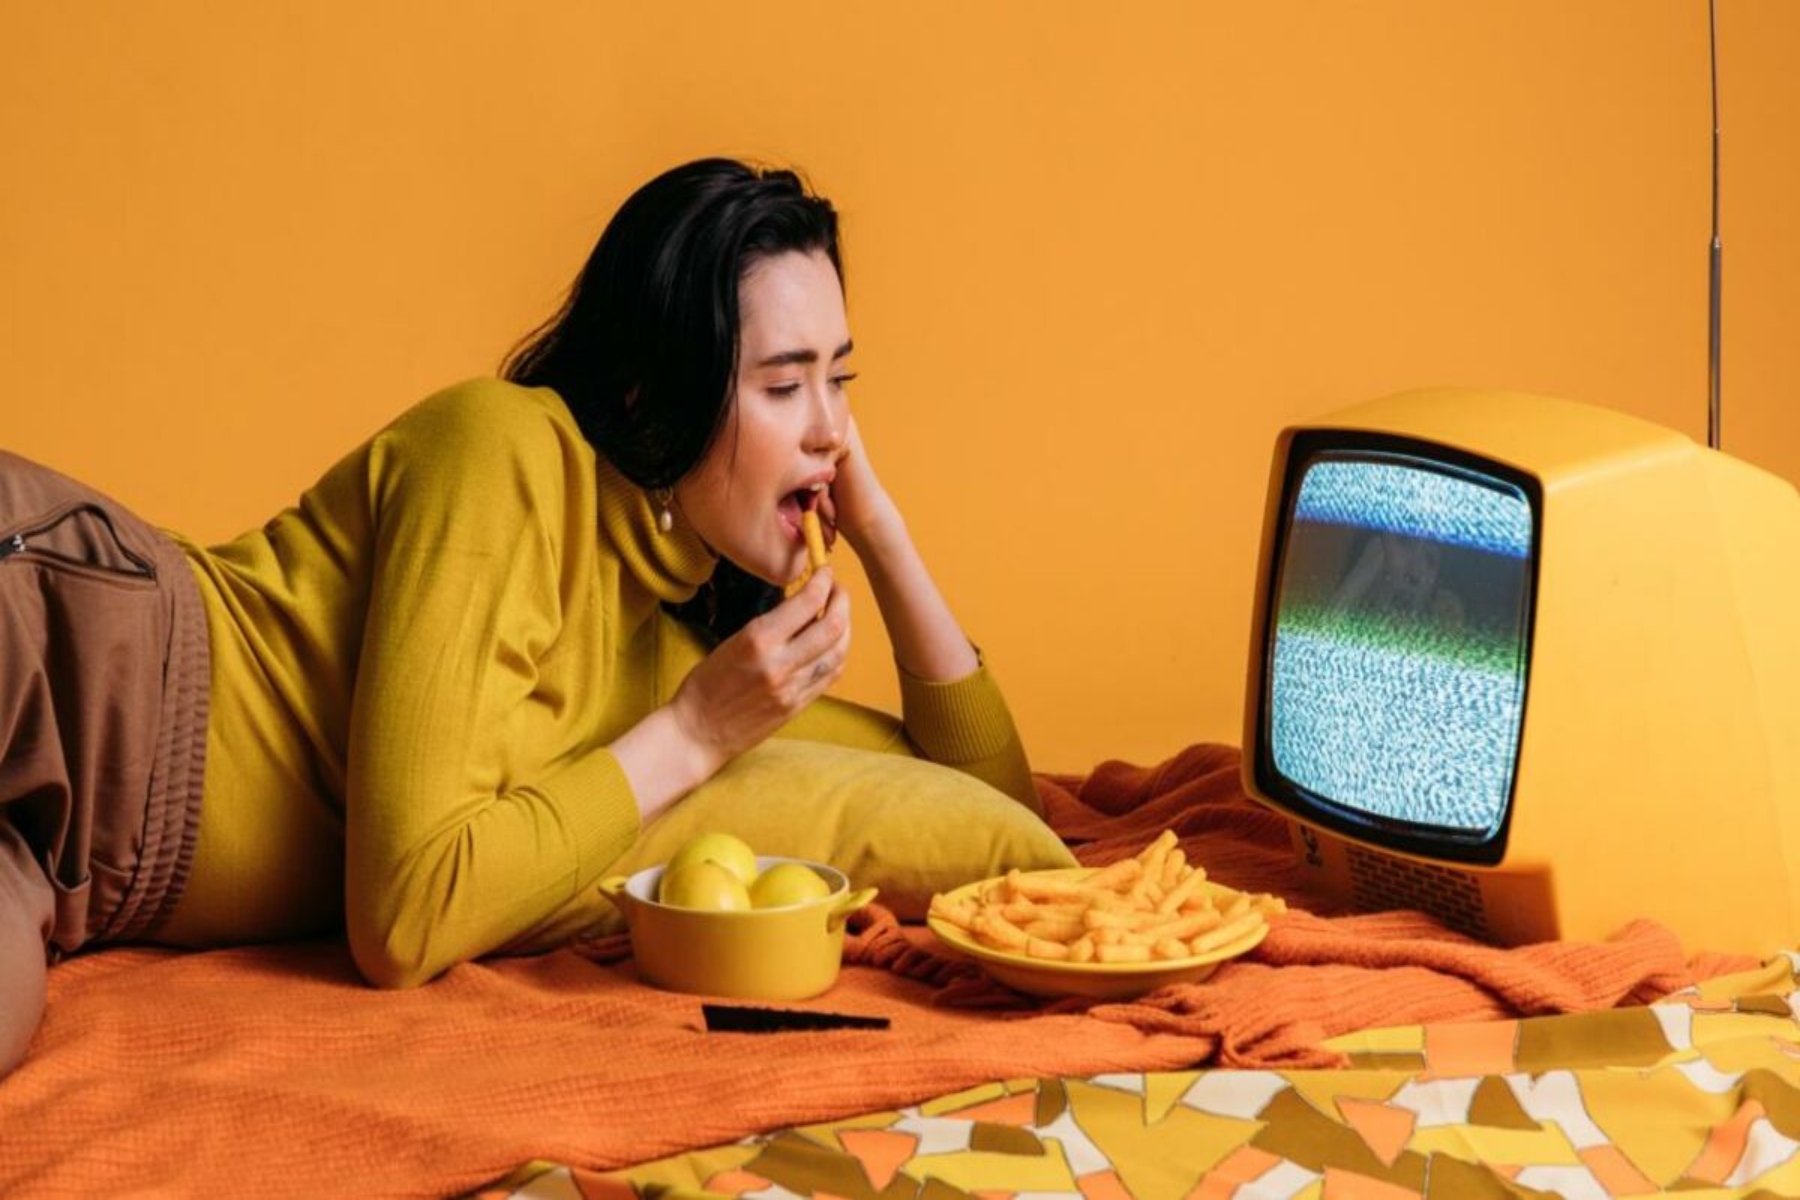 Τηλεόραση βάρος: Αν τρώτε ενώ παρακολουθείτε τηλεόραση μπορεί να οδηγήσει σε αύξηση βάρους